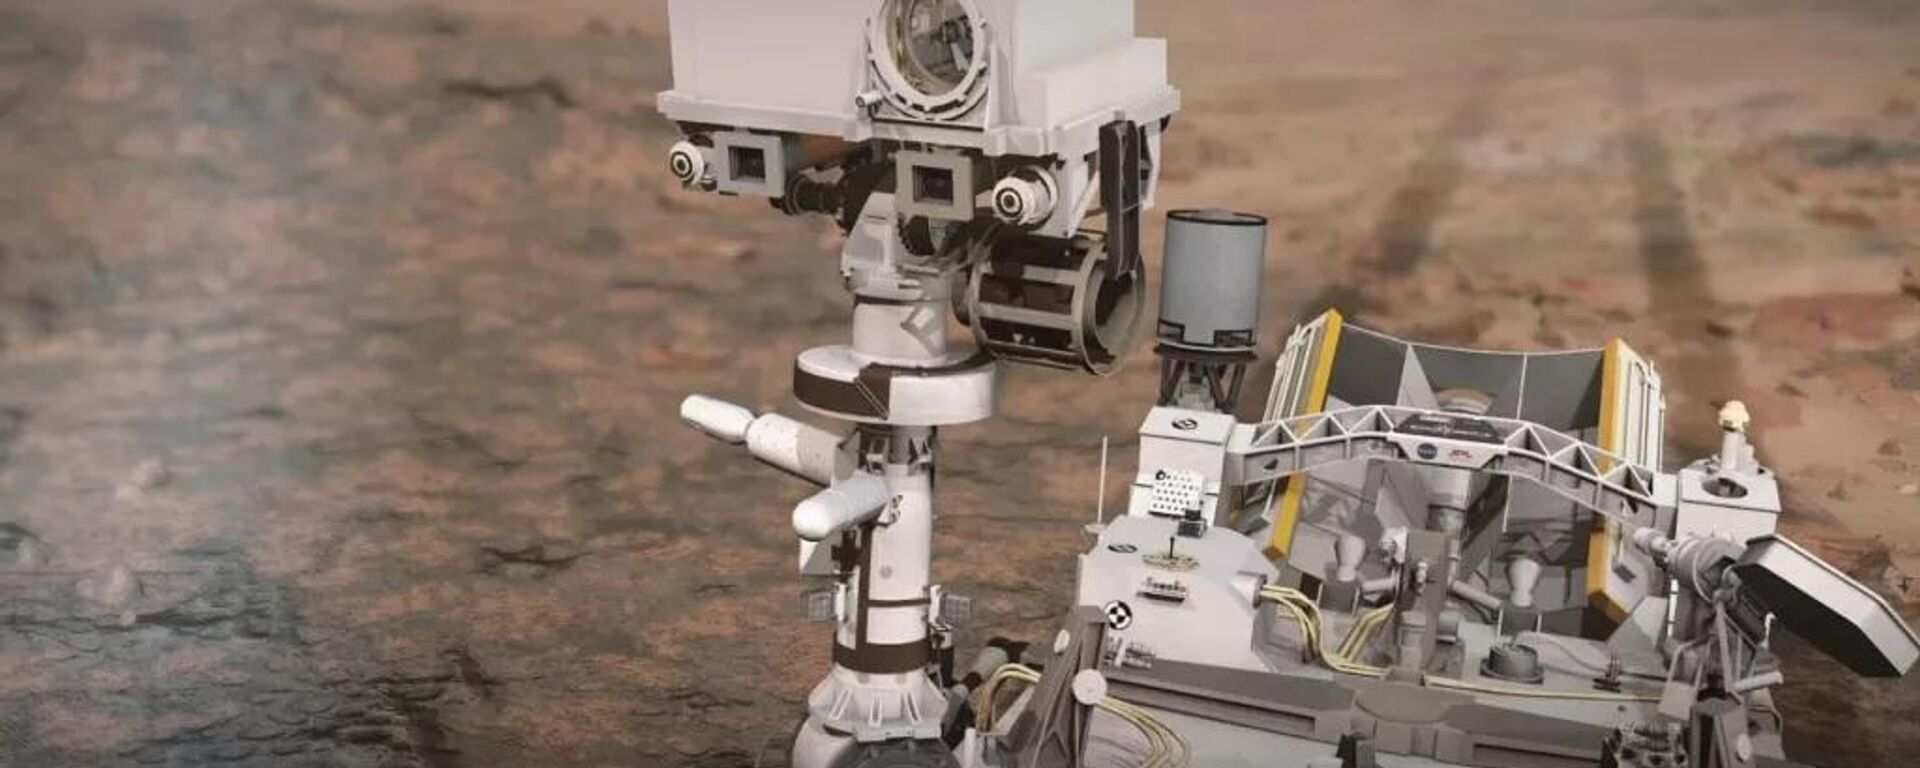 Rover marciano Perseverance, da NASA, a agência espacial norte-americana - Sputnik Brasil, 1920, 15.09.2022